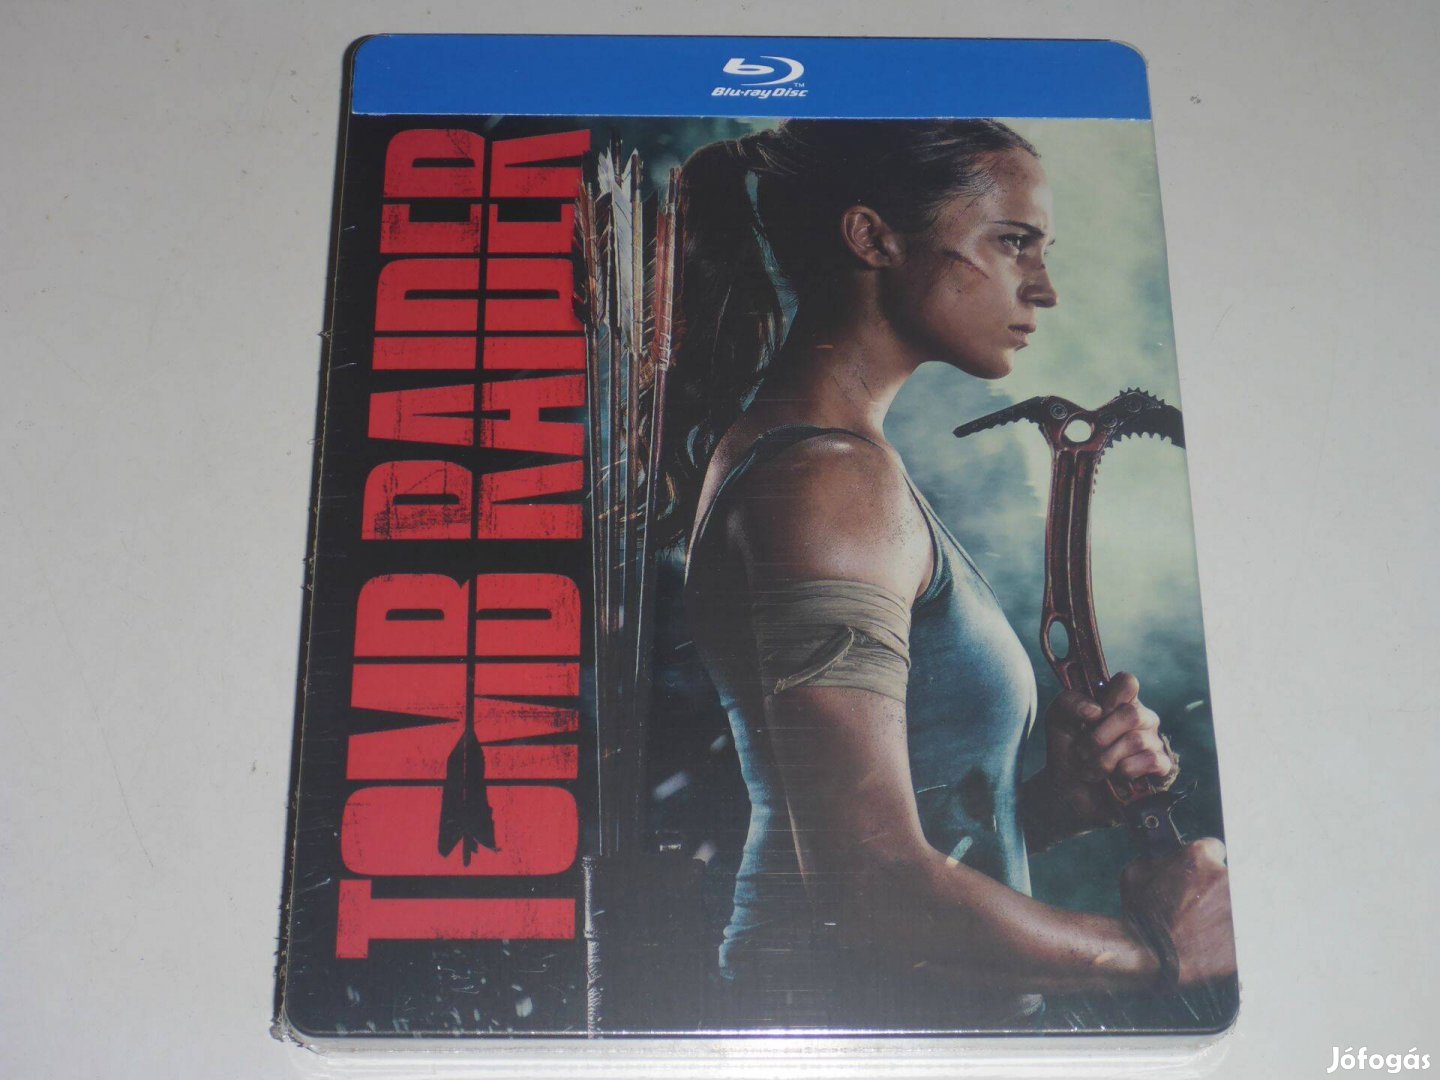 Tomb Raider - limitált, fémdobozos változat (steelbook) blu-ray film